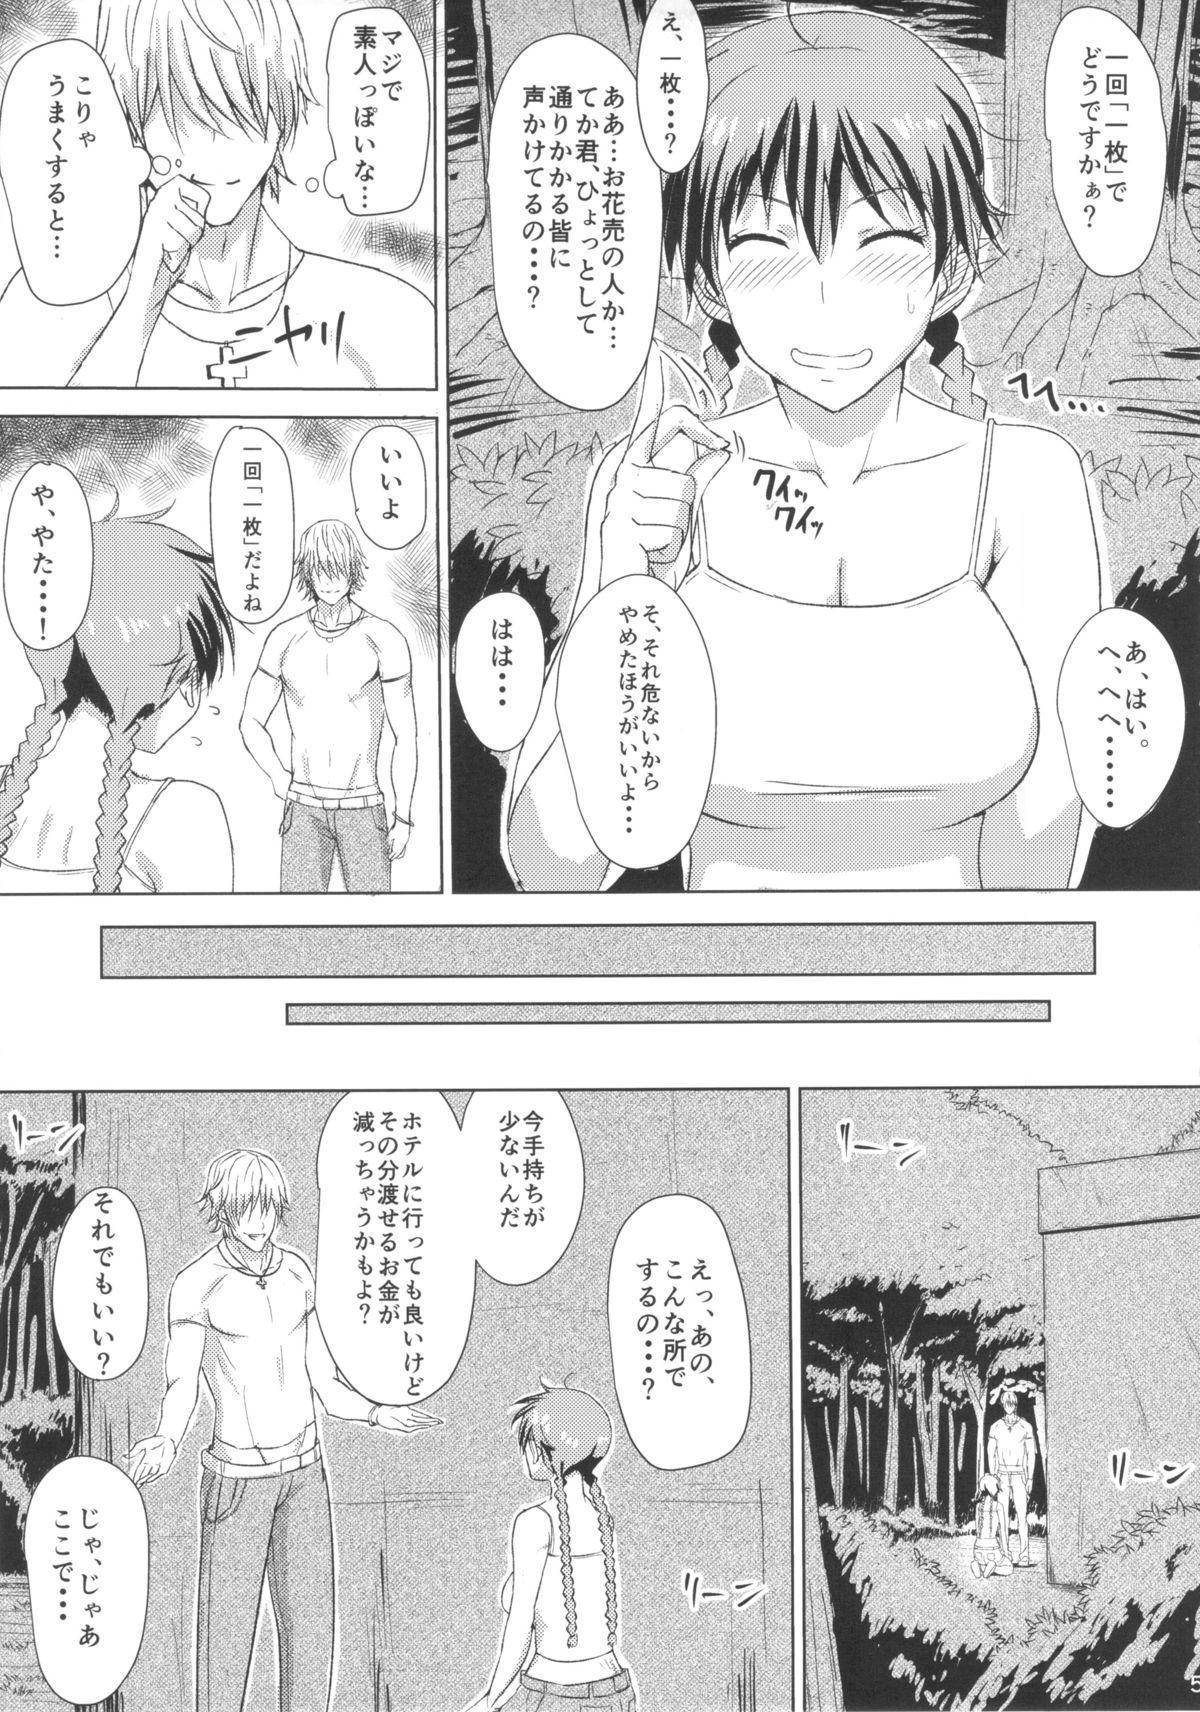 Rubdown Buhi no Tame ni Karada wo Hatta Momokan ga Charao ni Damasareru Hon - Ookiku furikabutte Teenies - Page 6